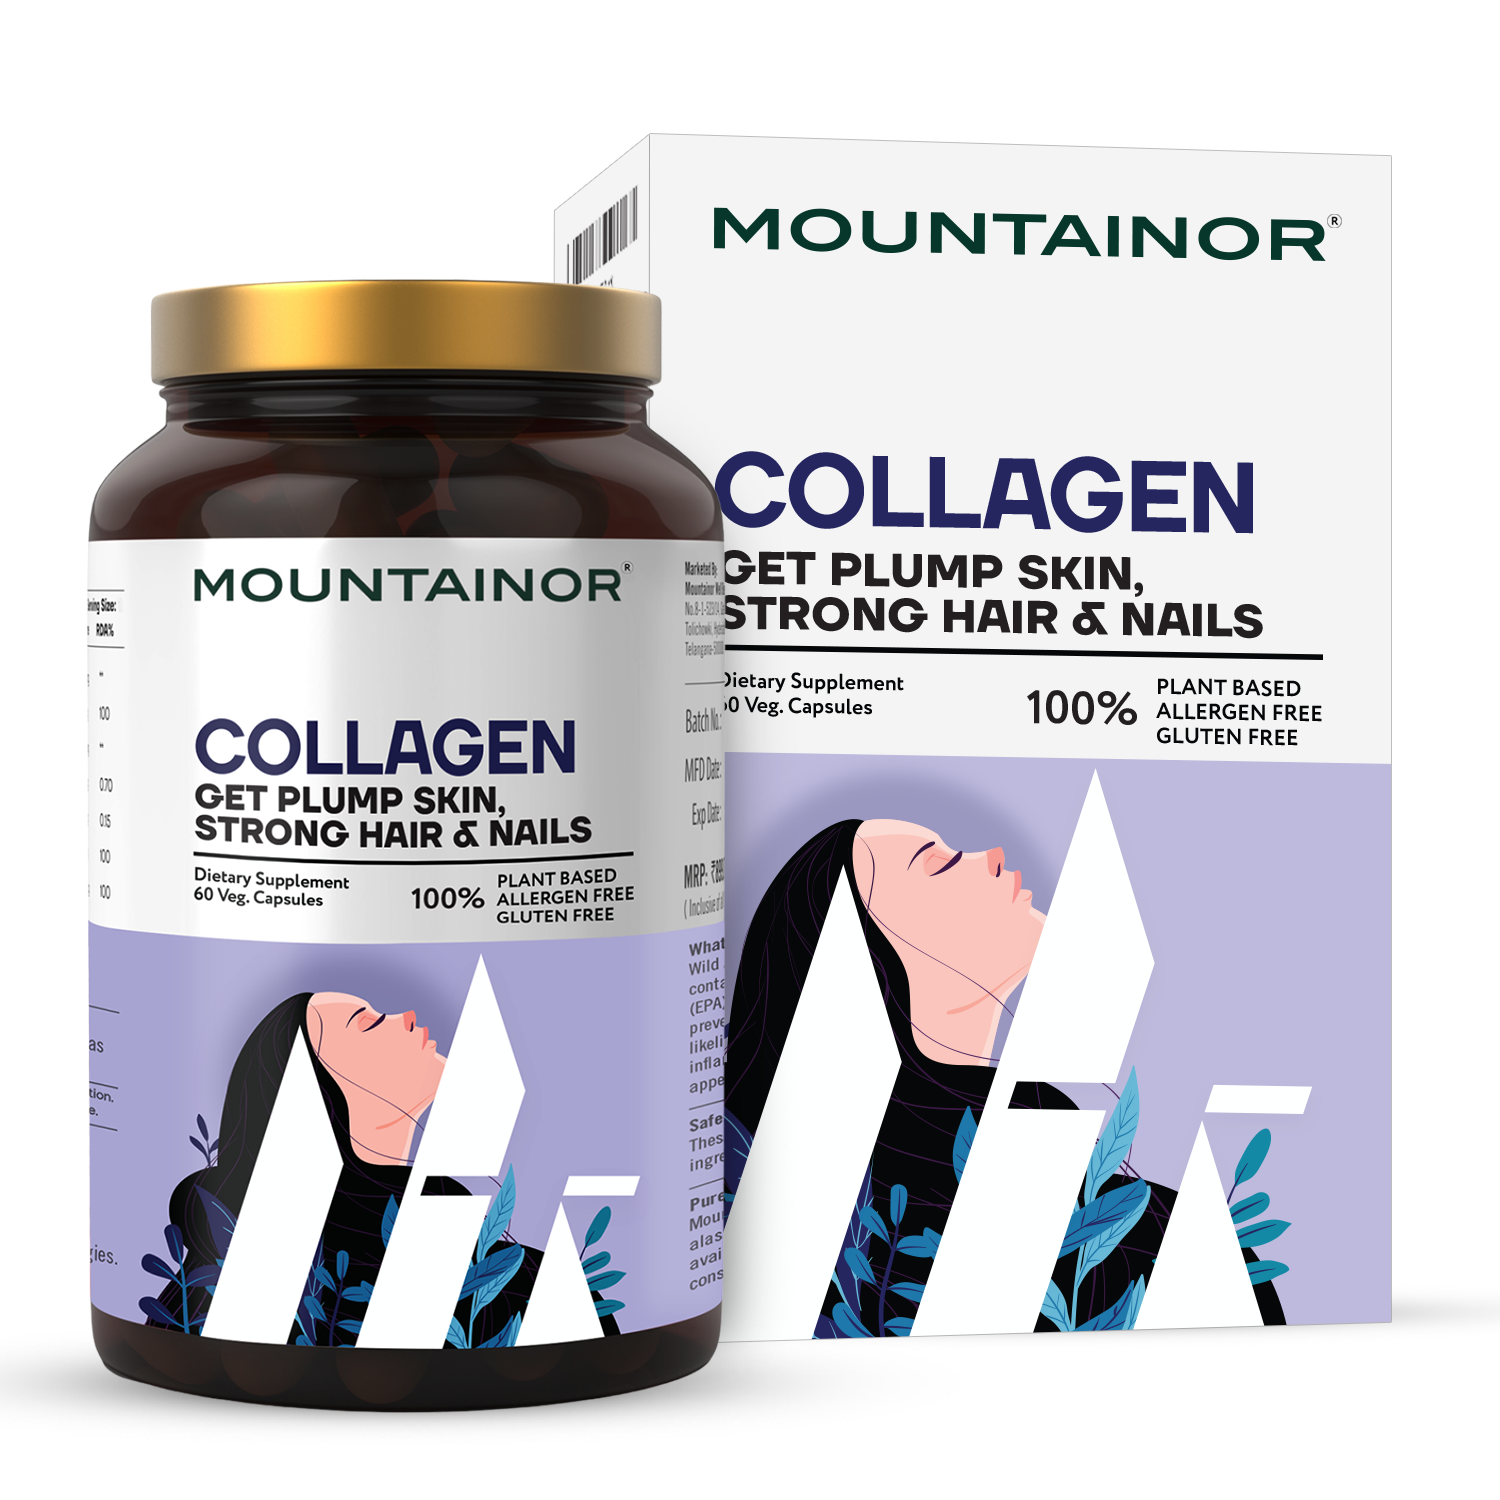 स्वस्थ त्वचा, बाल और जोड़ों के लिए कोलेजन कैप्सूल - 2 का पैक